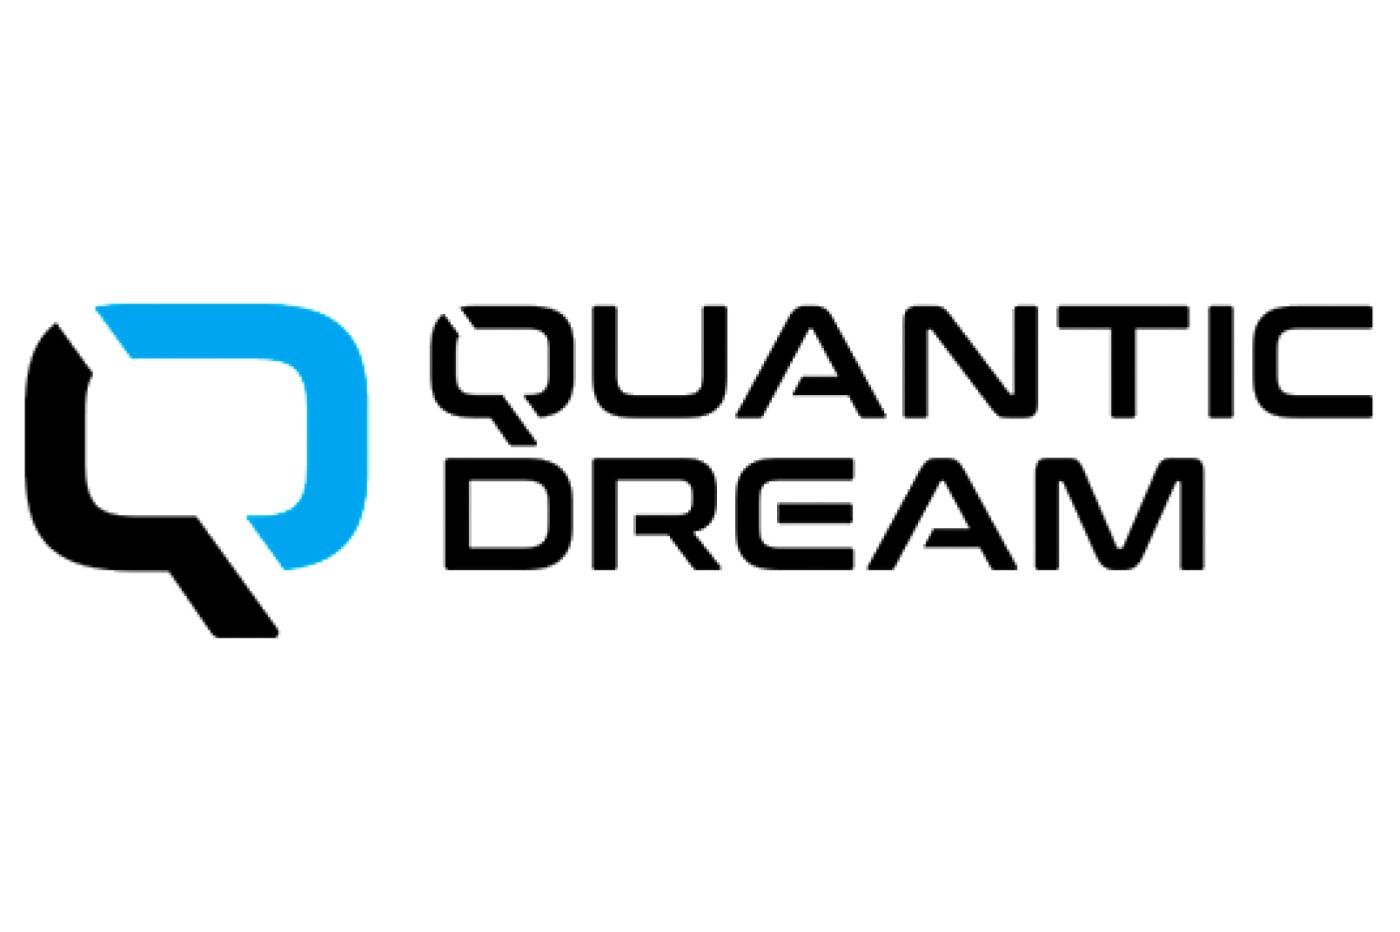 Quantic dream logo justice